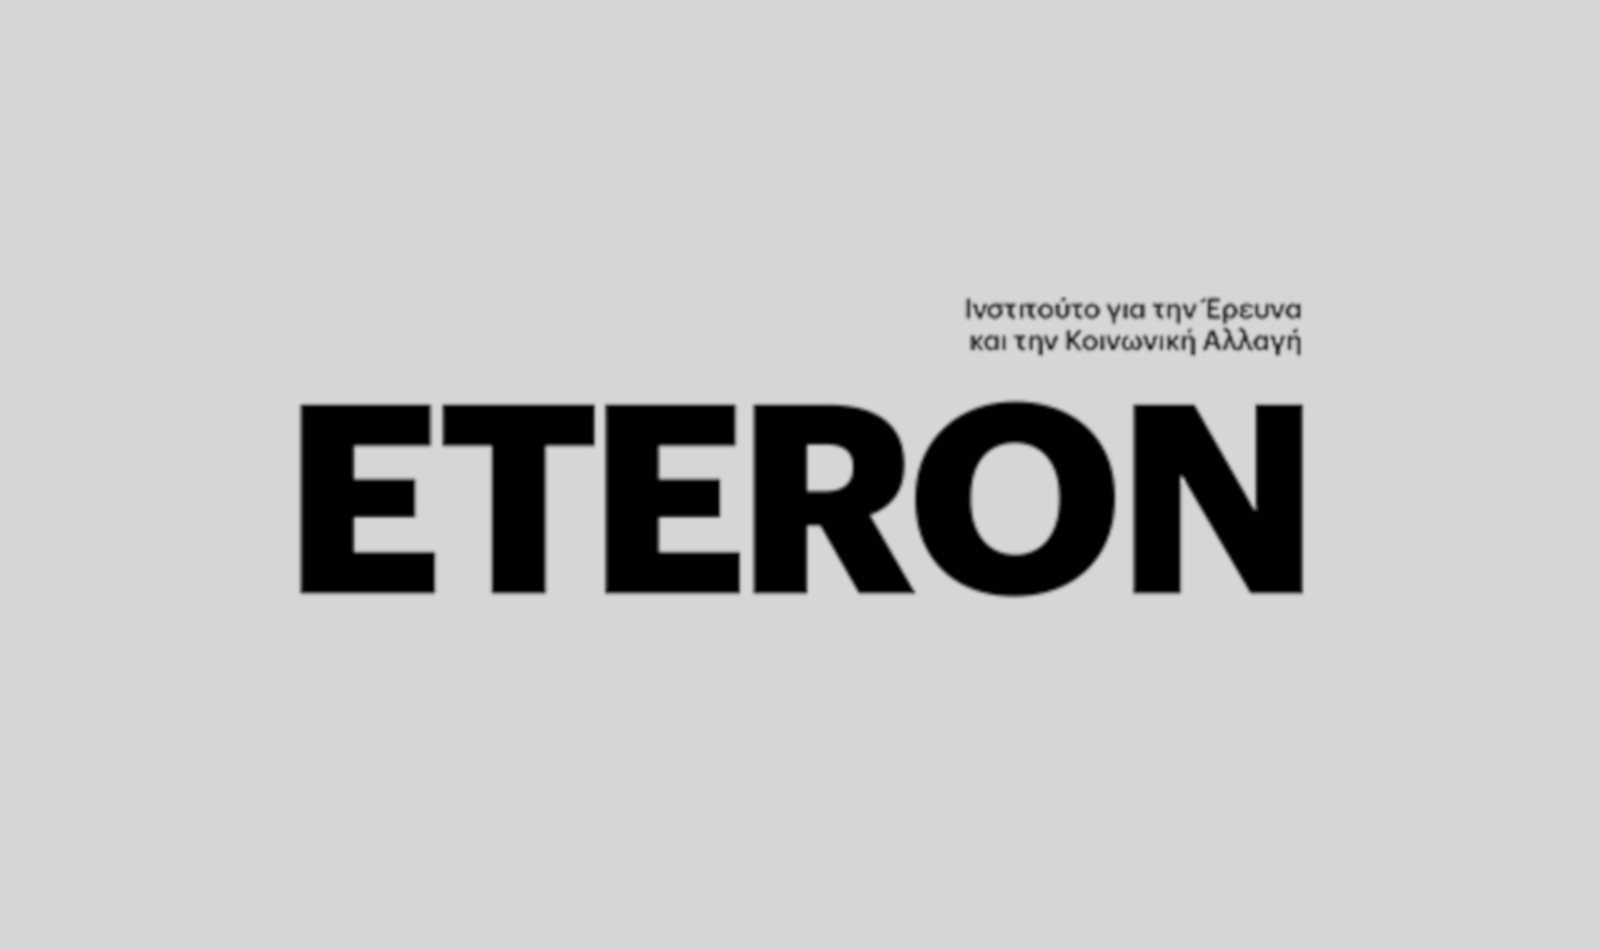 Eteron: Μέλος του European Citizen Action Service